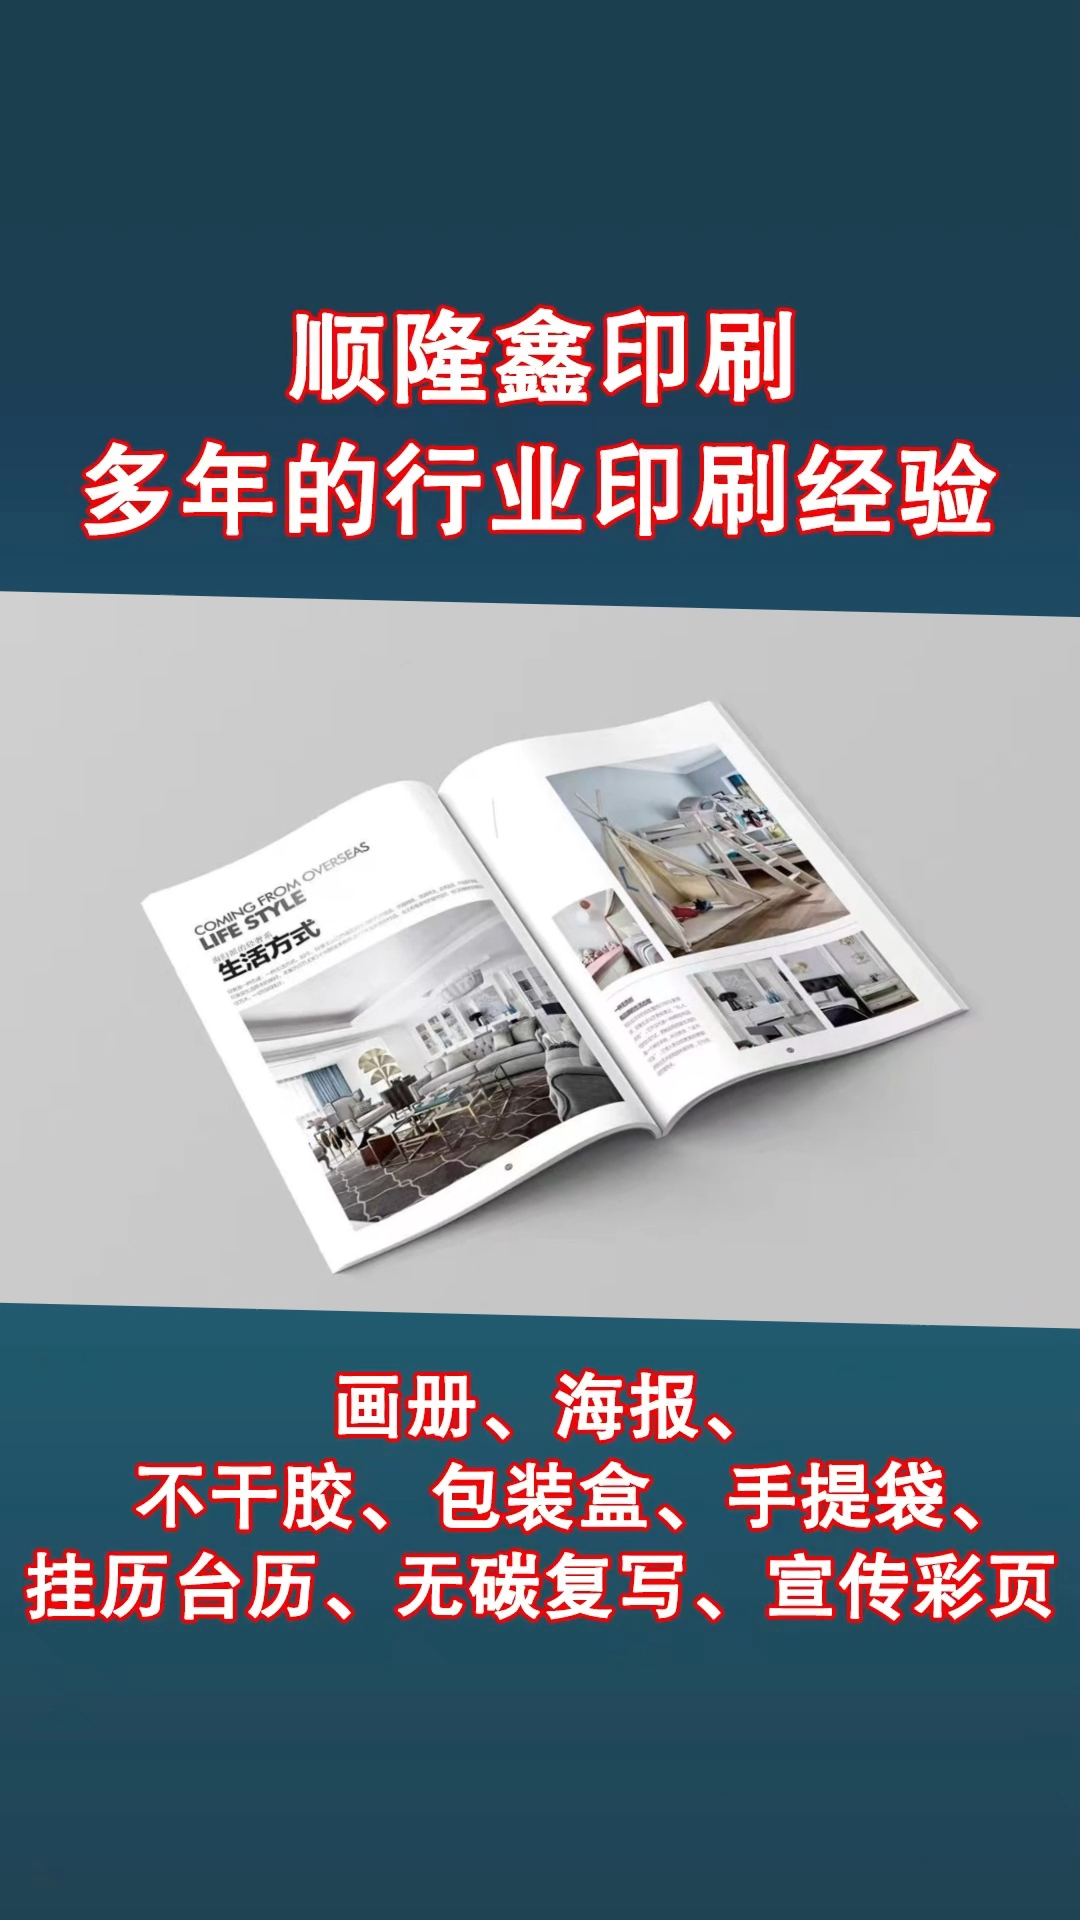 印刷宣传画册|宣传册印刷要重点考虑哪家南京印刷厂做出来的效果比较好